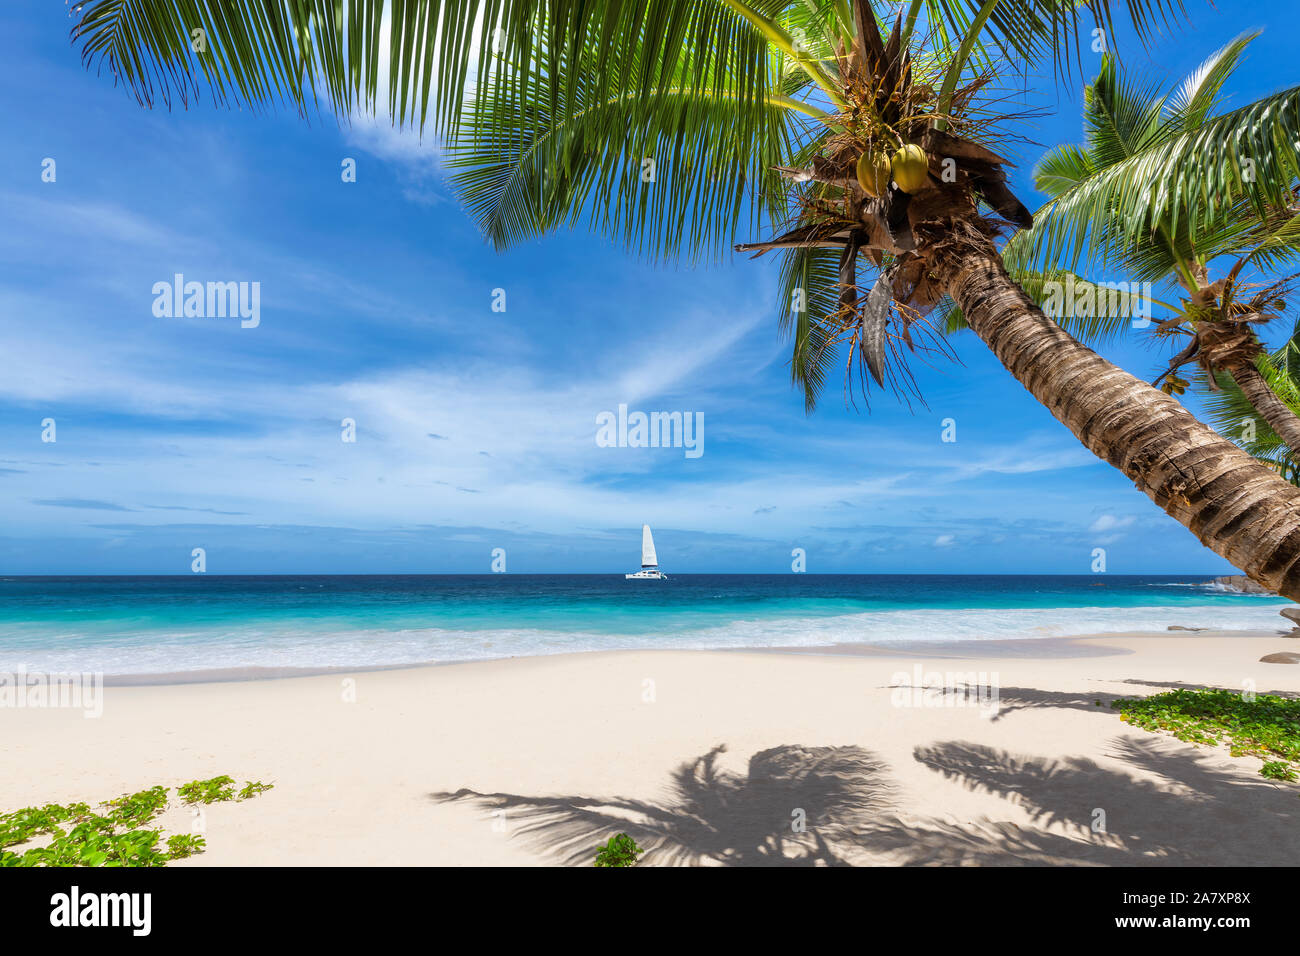 Exotischen tropischen Strand Hintergrund Stockfoto